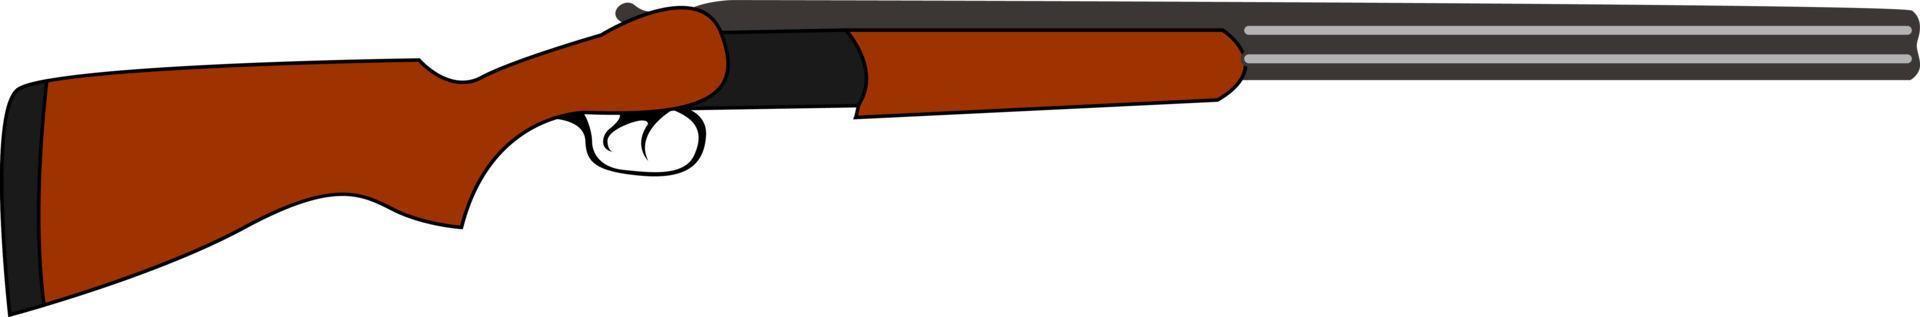 arme de fusil de chasse, illustration, vecteur sur fond blanc.